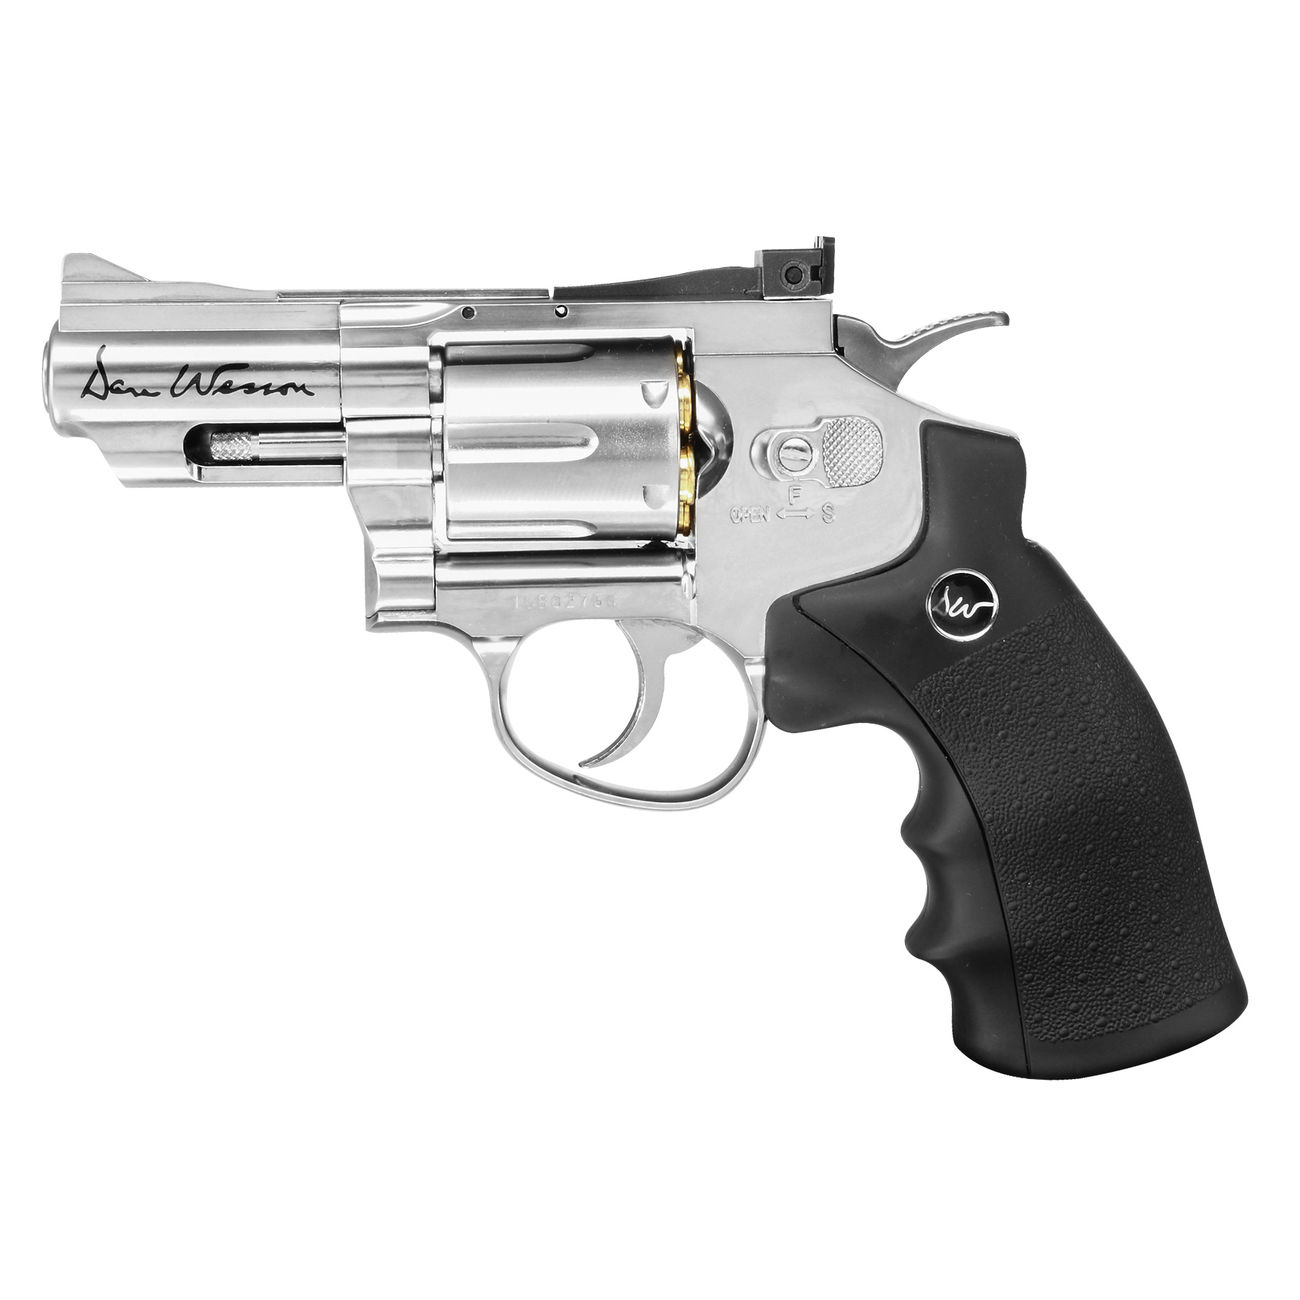 ASG Dan Wesson 2,5 Zoll 4,5mm BB CO2 Revolver silber Bild 1